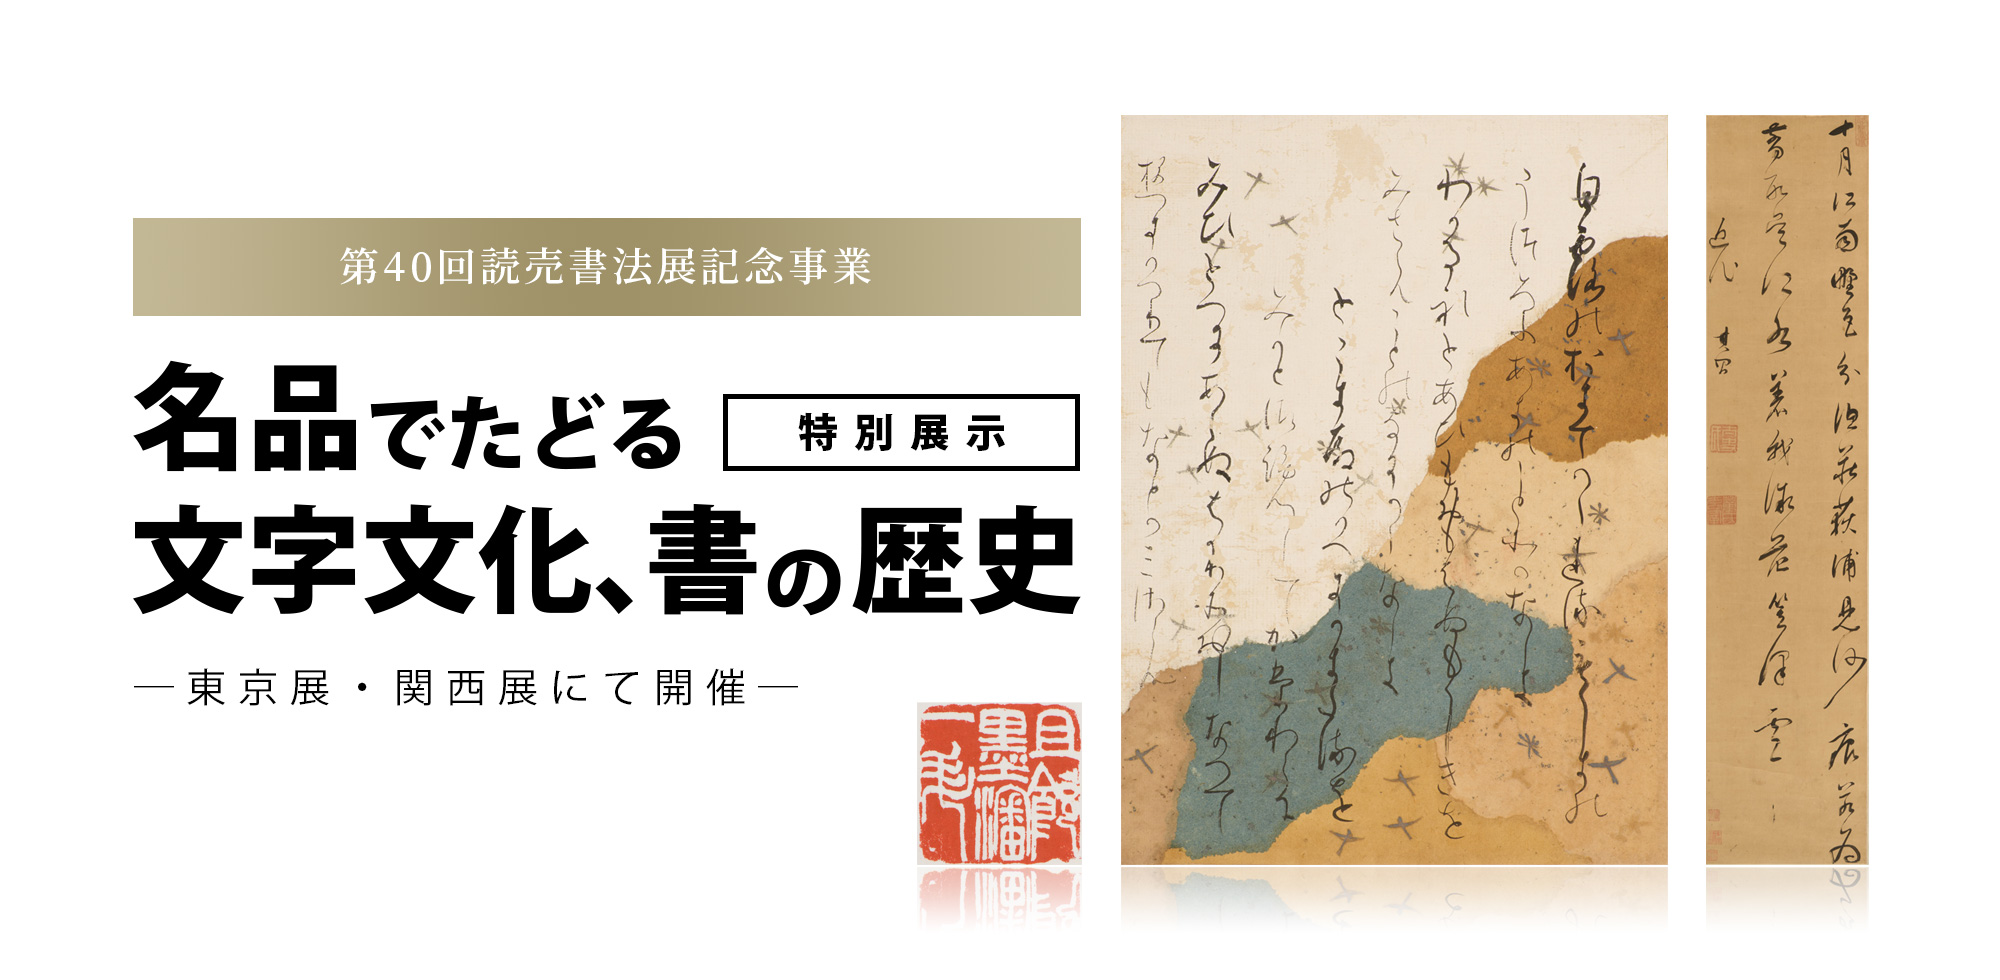 第40回読売書法展記念事業 特別展示「名品でたどる文字文化、書の歴史」 東京展・関西展にて開催